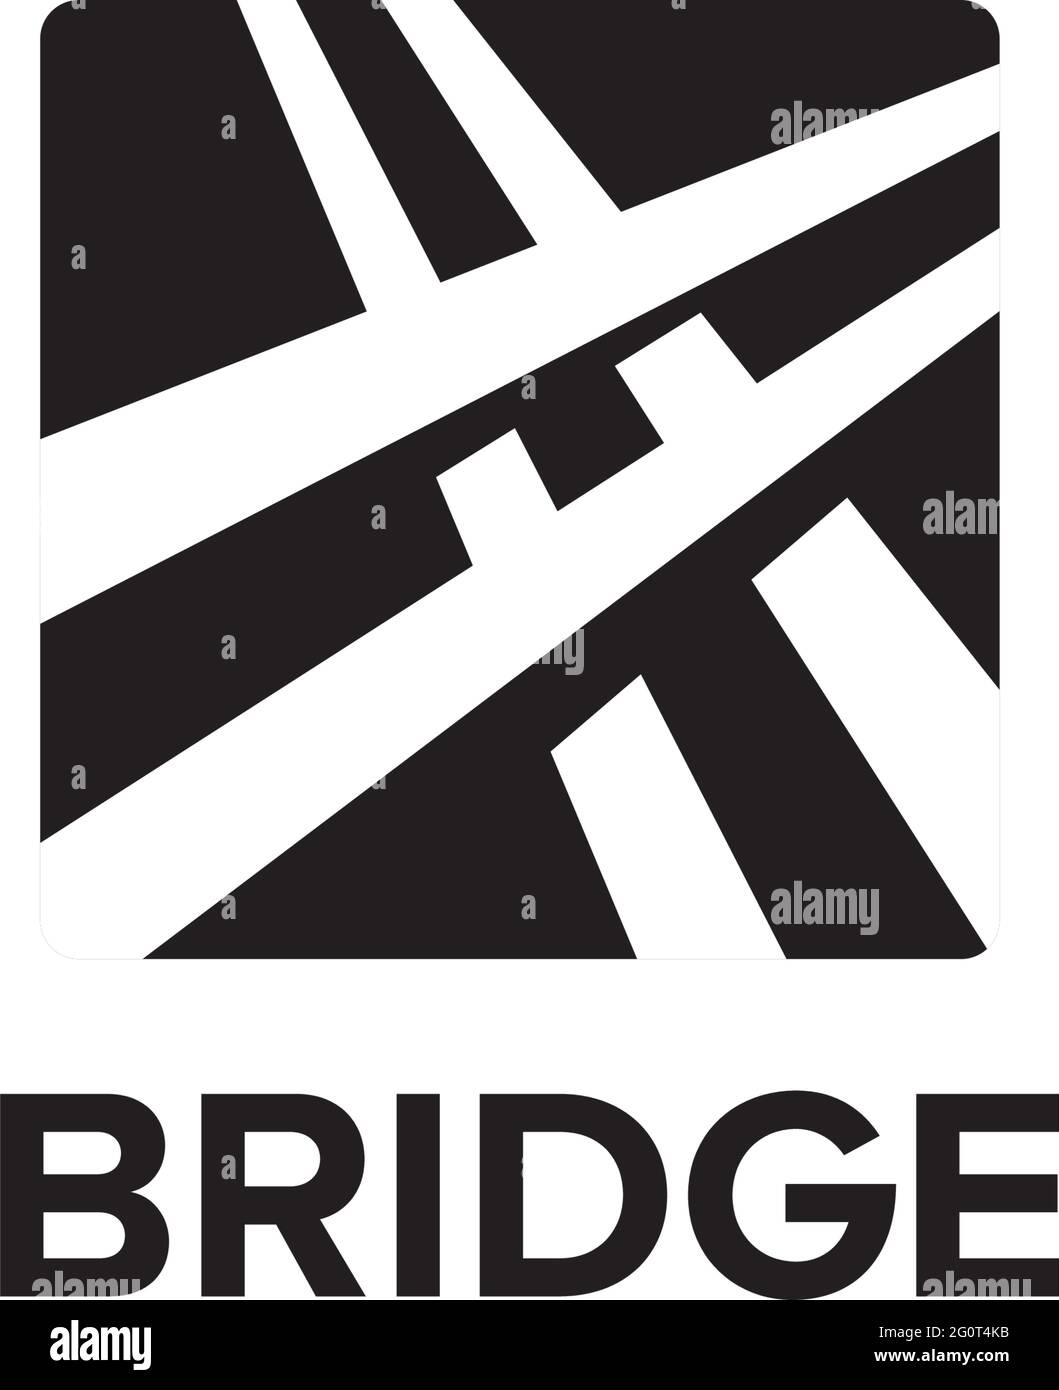 Bridge shadow logo design vector template Stock Vector